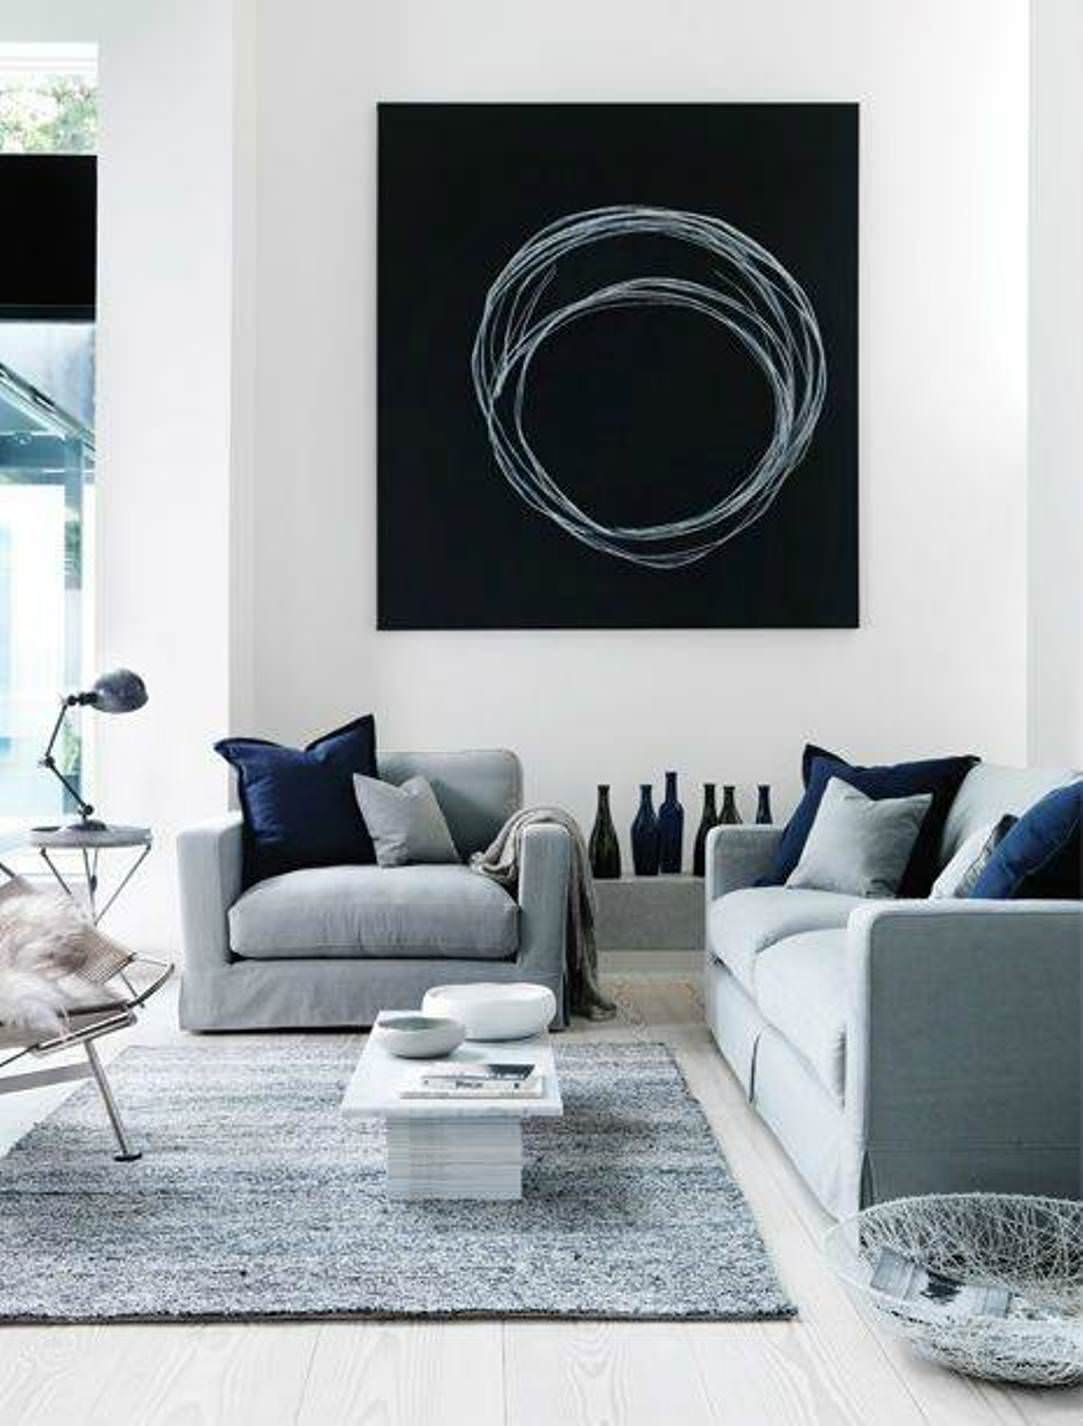 Idea soggiorno monocromo stile moderno scandinavo, con arredi colore grigio e blu. Quadro molto semplice e d'impatto in tema con l'ambiente